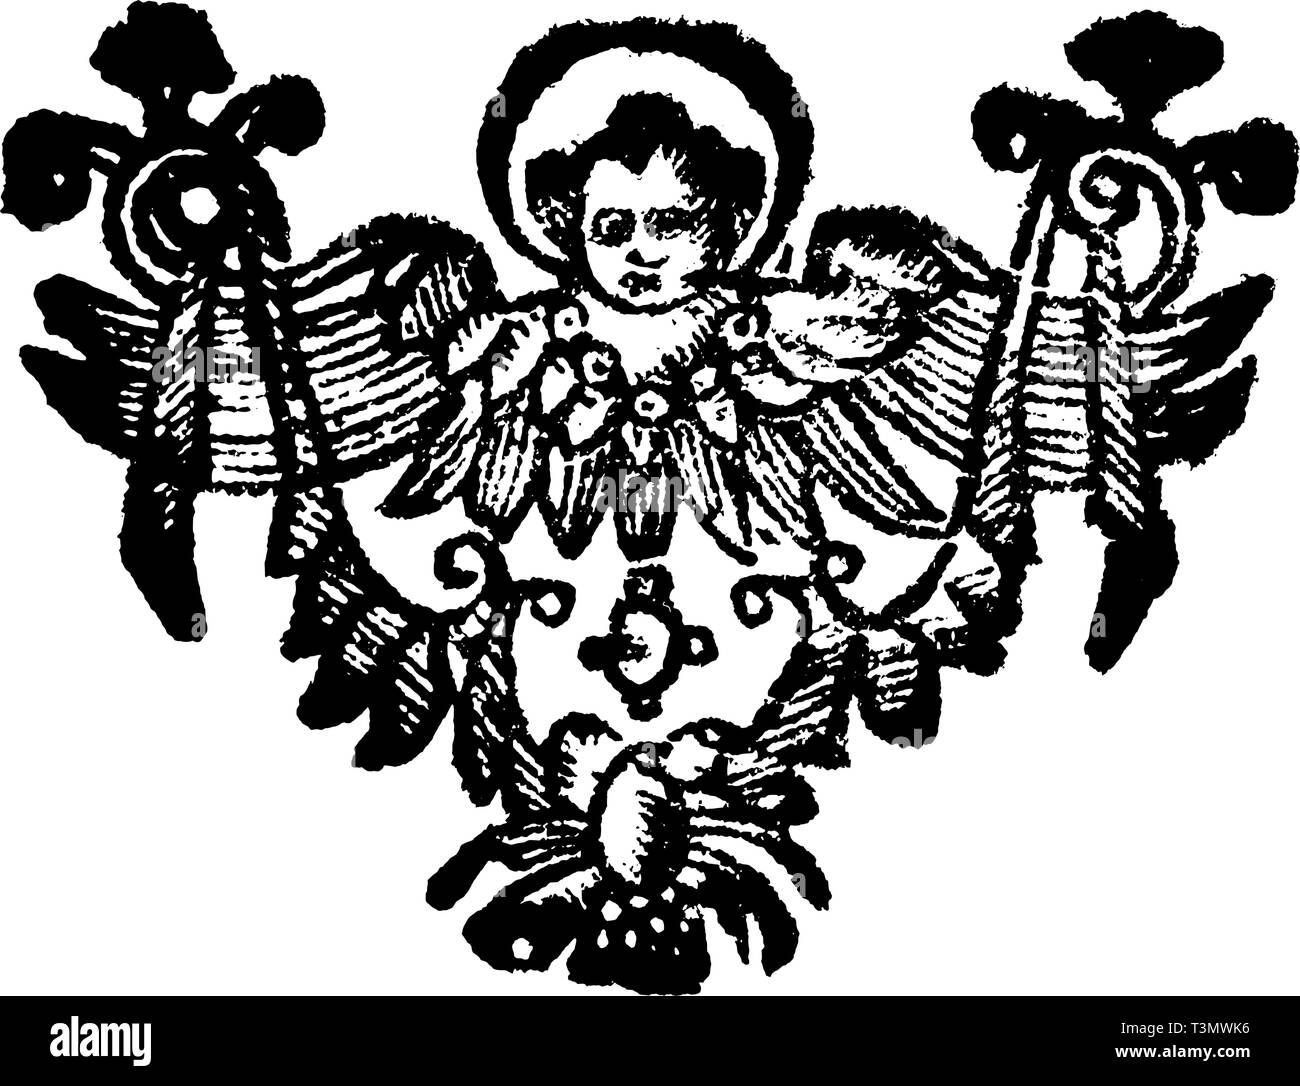 Antico disegno vettoriale o incisione di classic vintage grunge floral design decorativo di angelo cristiano.Dal libro Die Betrubte und noch ihrem Beliebten Geussende Turteltaube, stampato in Praga, Impero Austriaco, 1716. Illustrazione Vettoriale